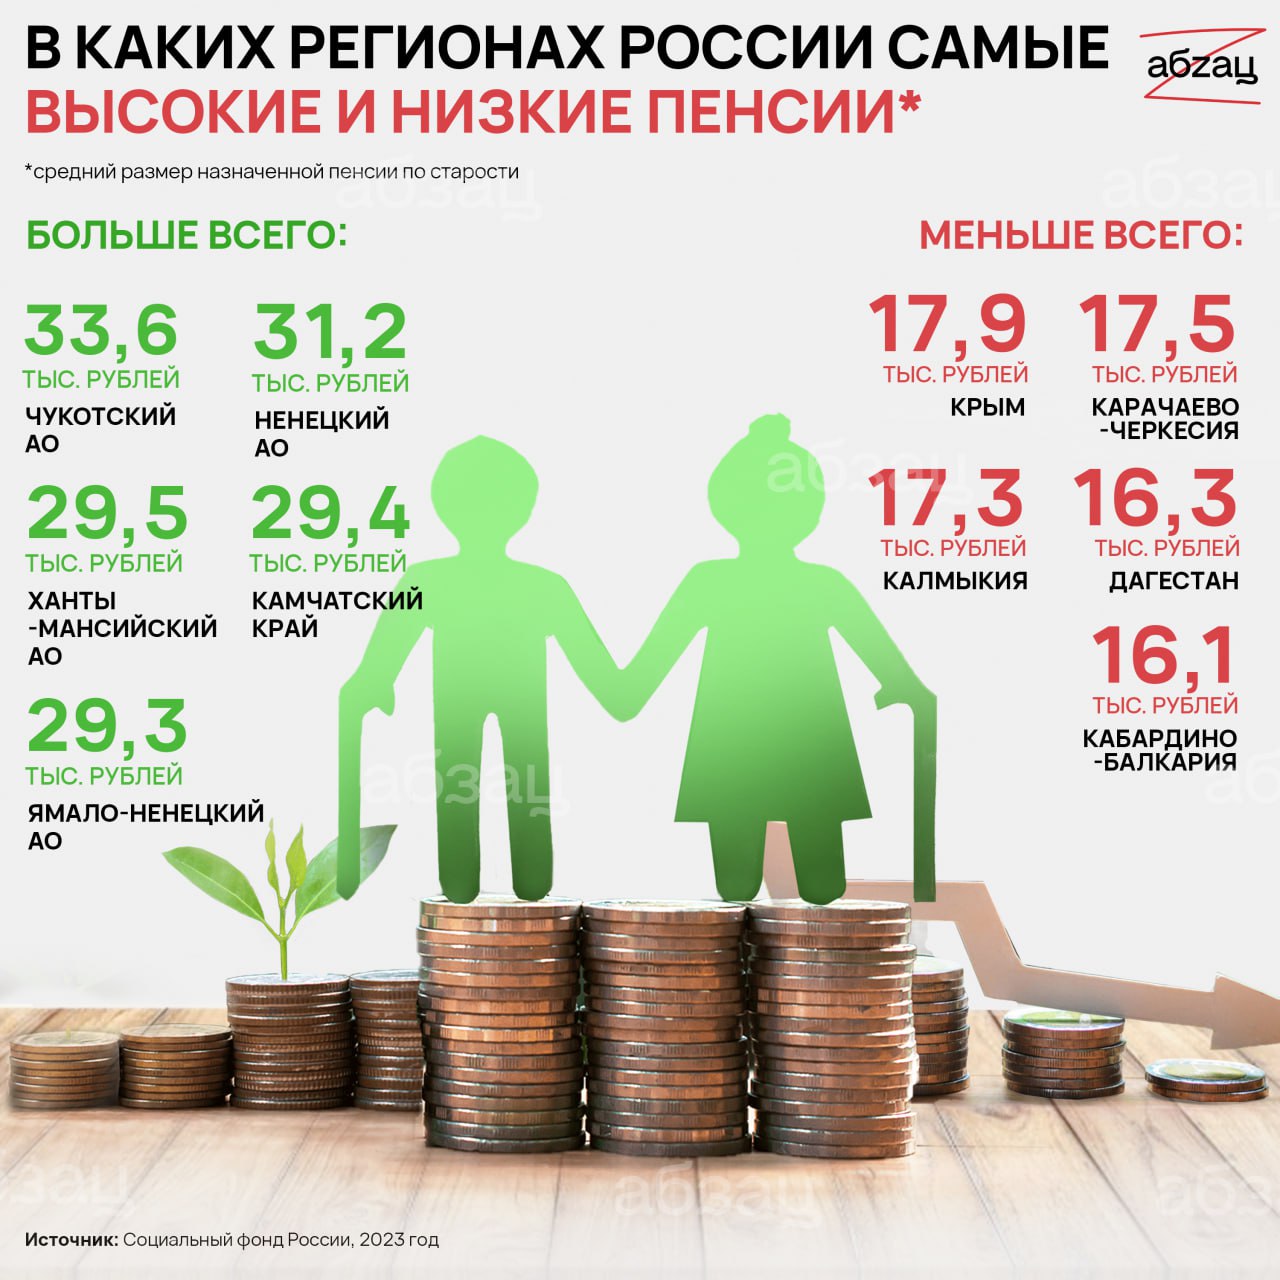 Социальная пенсия по старости 2023 году. Самая высокая пенсия в России. Самые высокие пенсии в России по регионам. Сумма социальной пенсии в 2023 году. Средняя пенсия в России в 2023.